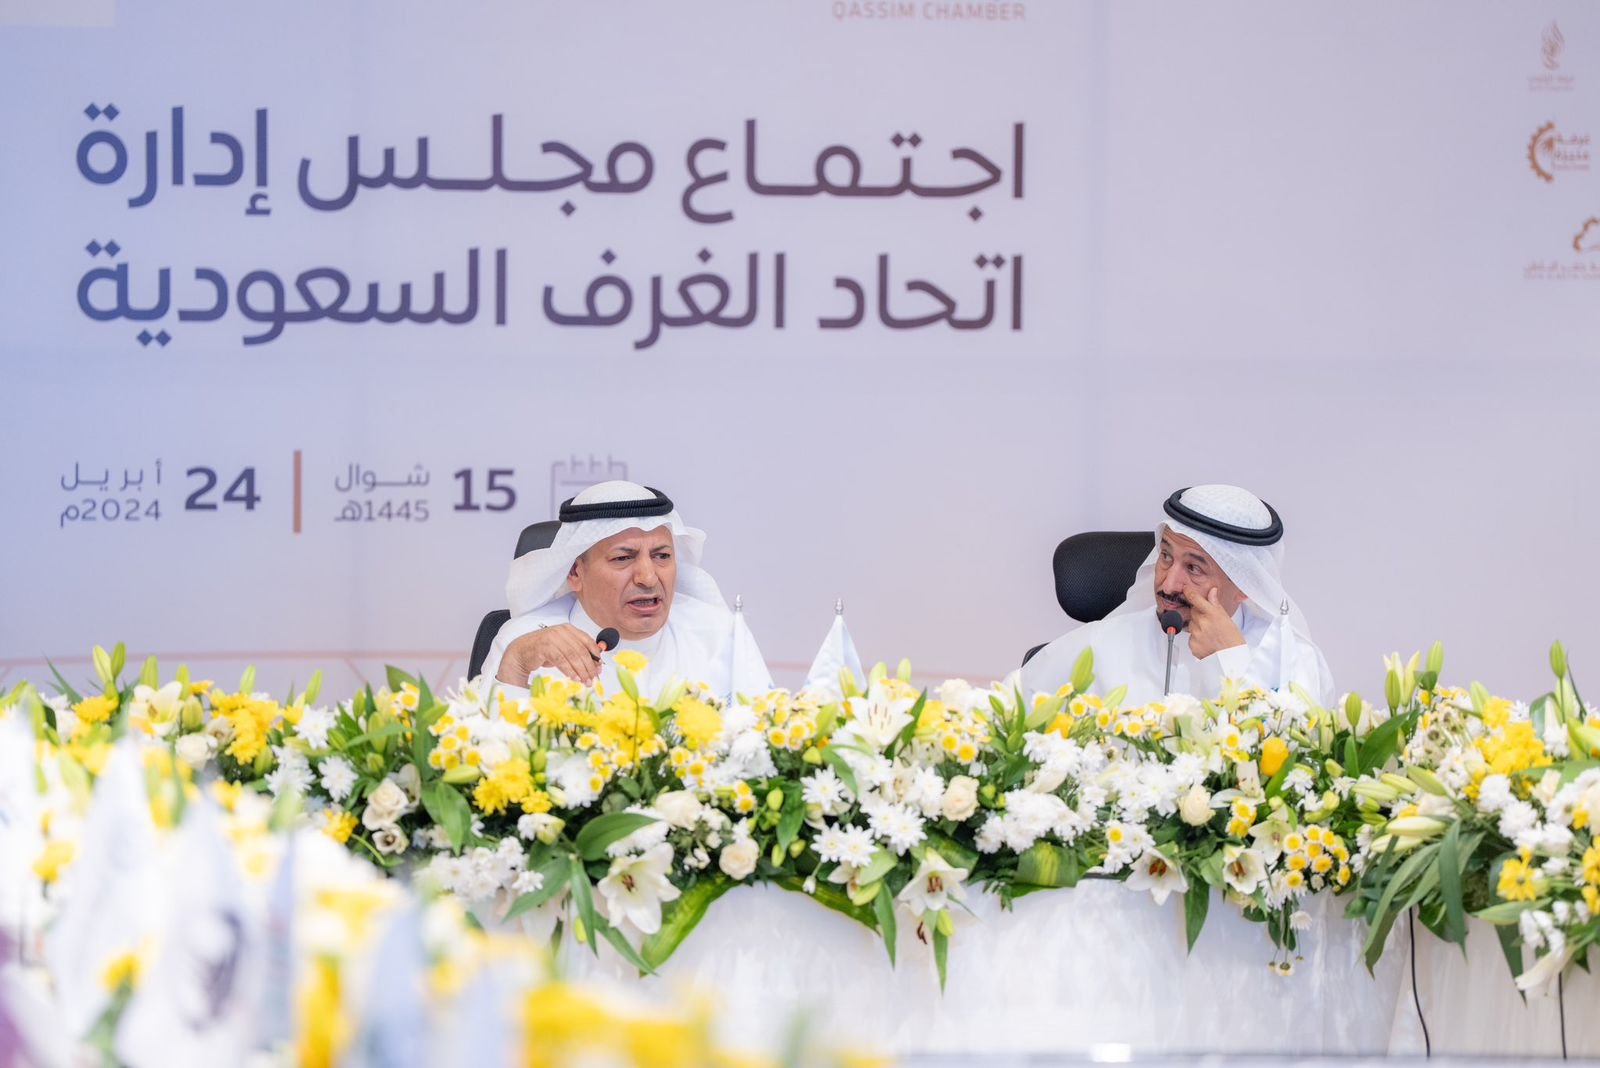 رئيس غرفة جازان يشارك في اجتماع اتحاد الغرف السعودية129 لتعزيز التعاون بين الغرف التجارية